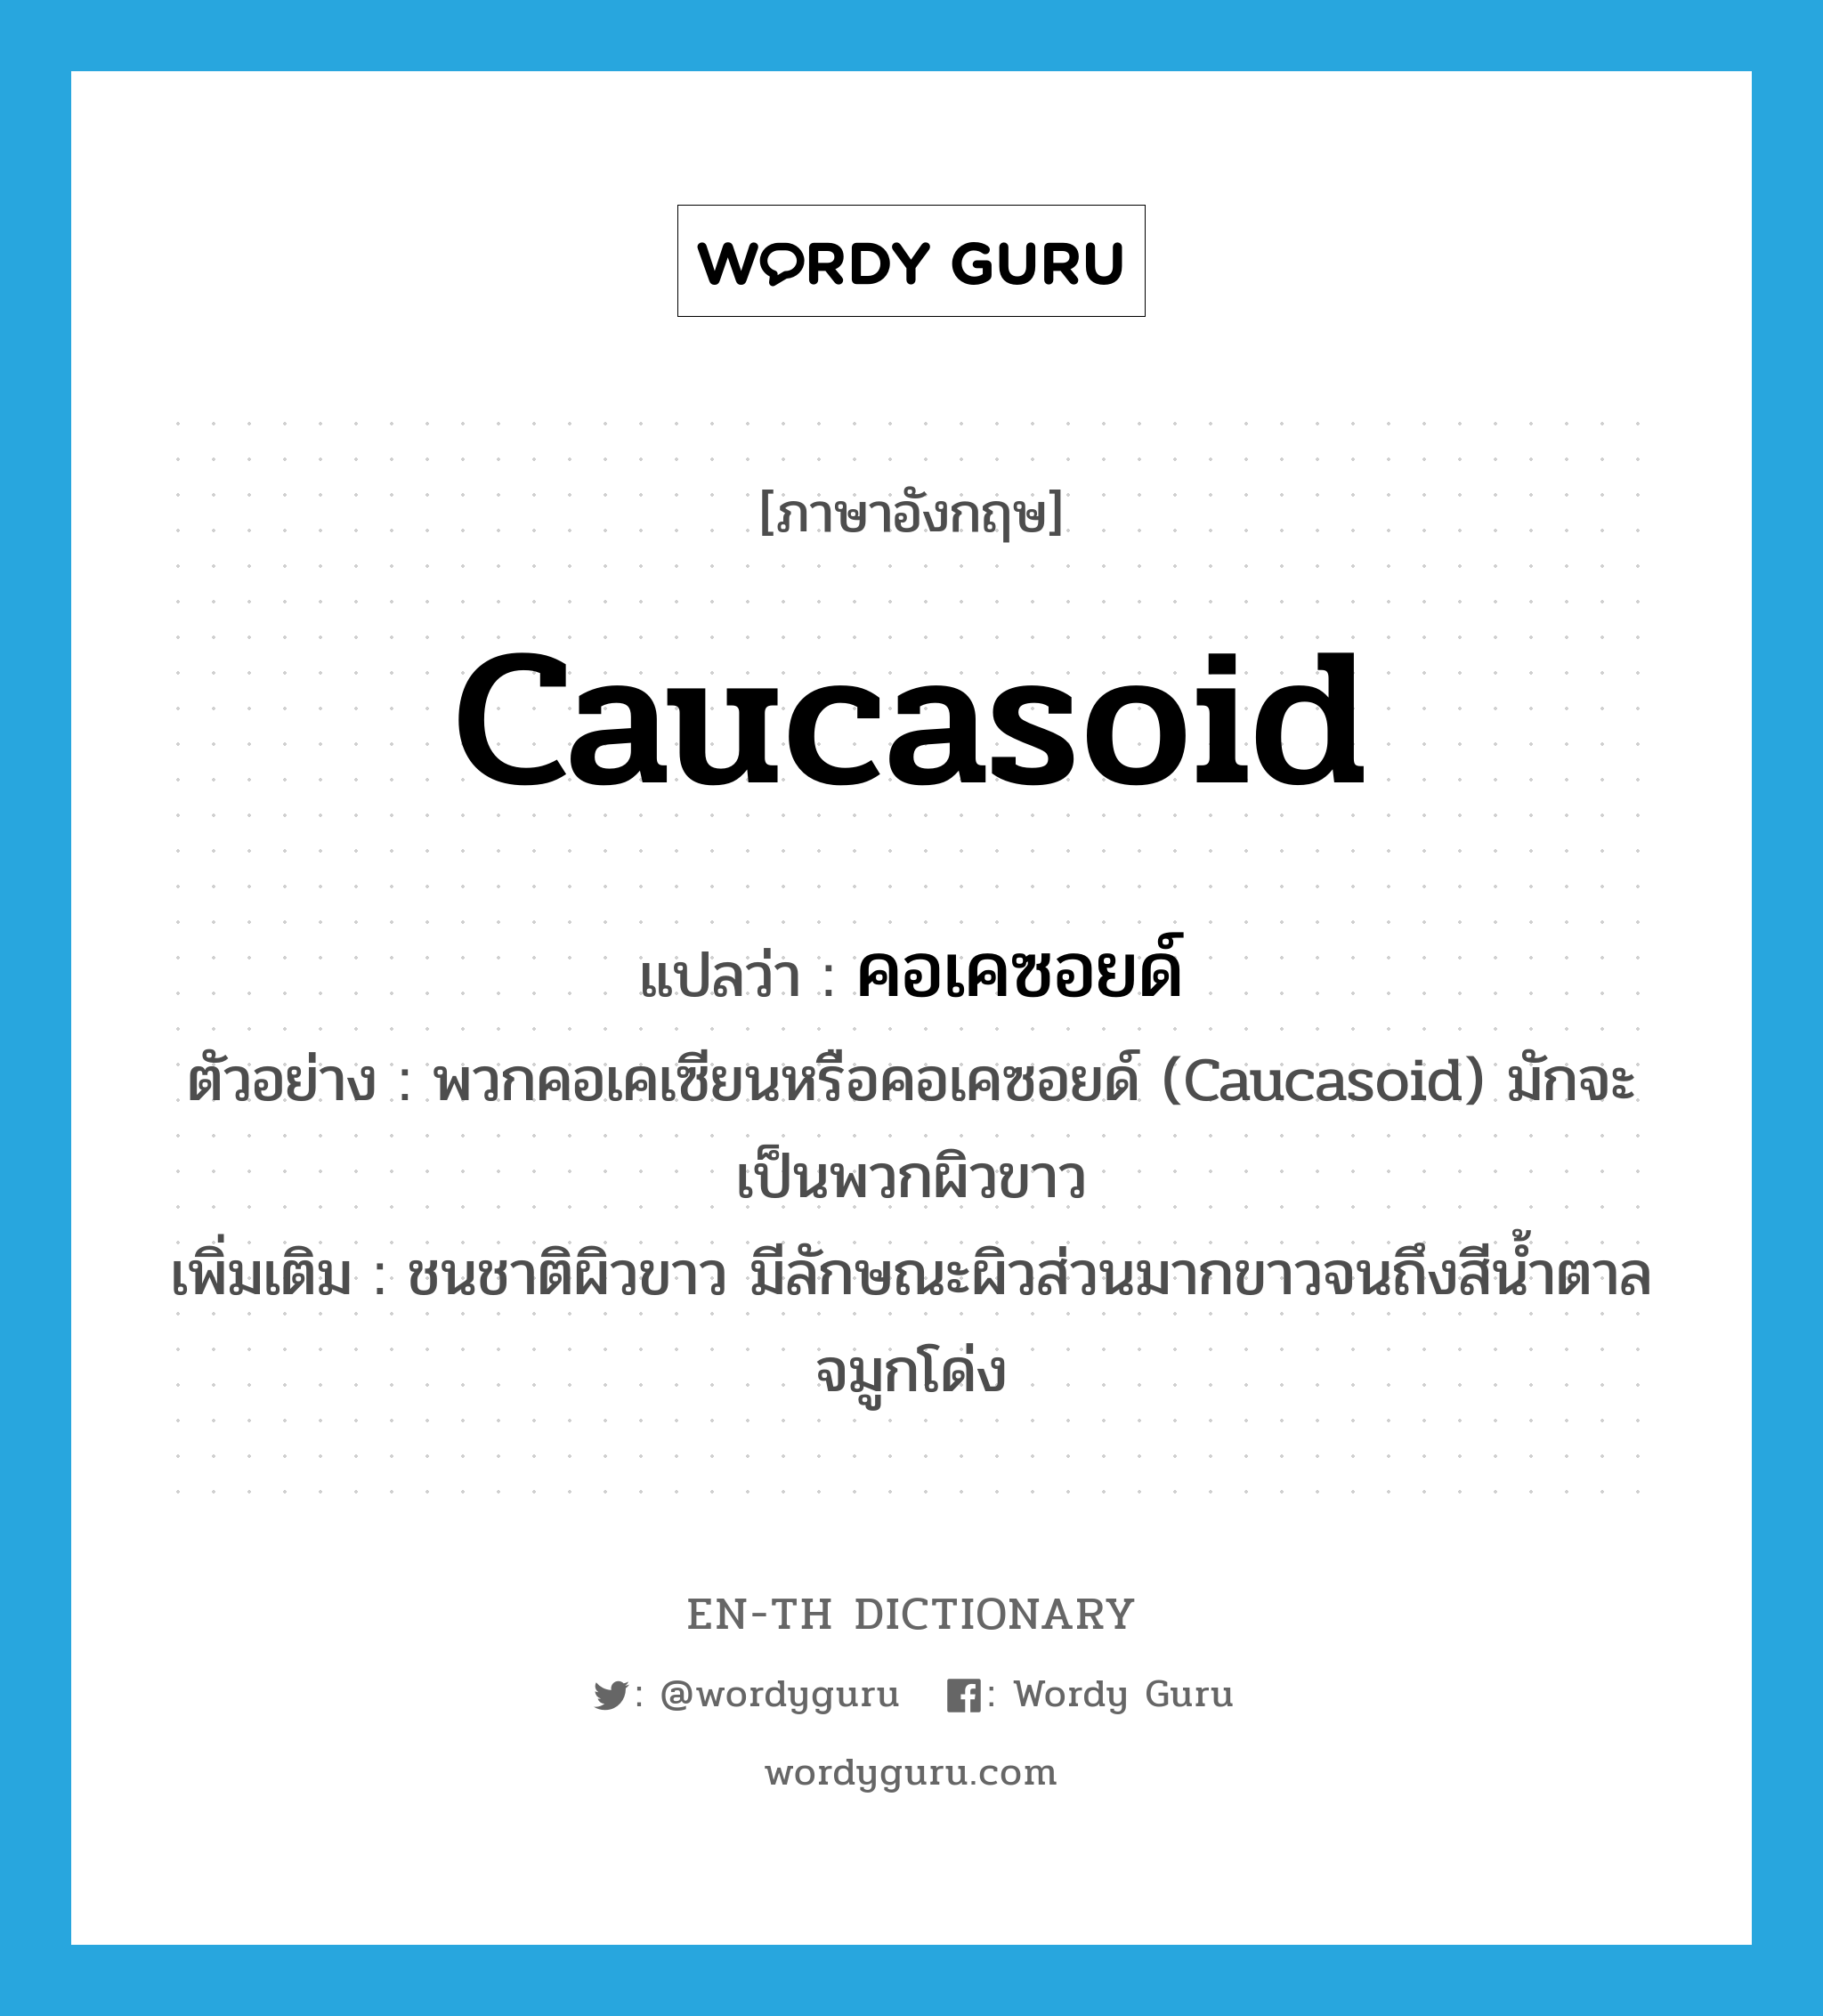 Caucasoid แปลว่า?, คำศัพท์ภาษาอังกฤษ Caucasoid แปลว่า คอเคซอยด์ ประเภท N ตัวอย่าง พวกคอเคเซียนหรือคอเคซอยด์ (Caucasoid) มักจะเป็นพวกผิวขาว เพิ่มเติม ชนชาติผิวขาว มีลักษณะผิวส่วนมากขาวจนถึงสีน้ำตาล จมูกโด่ง หมวด N